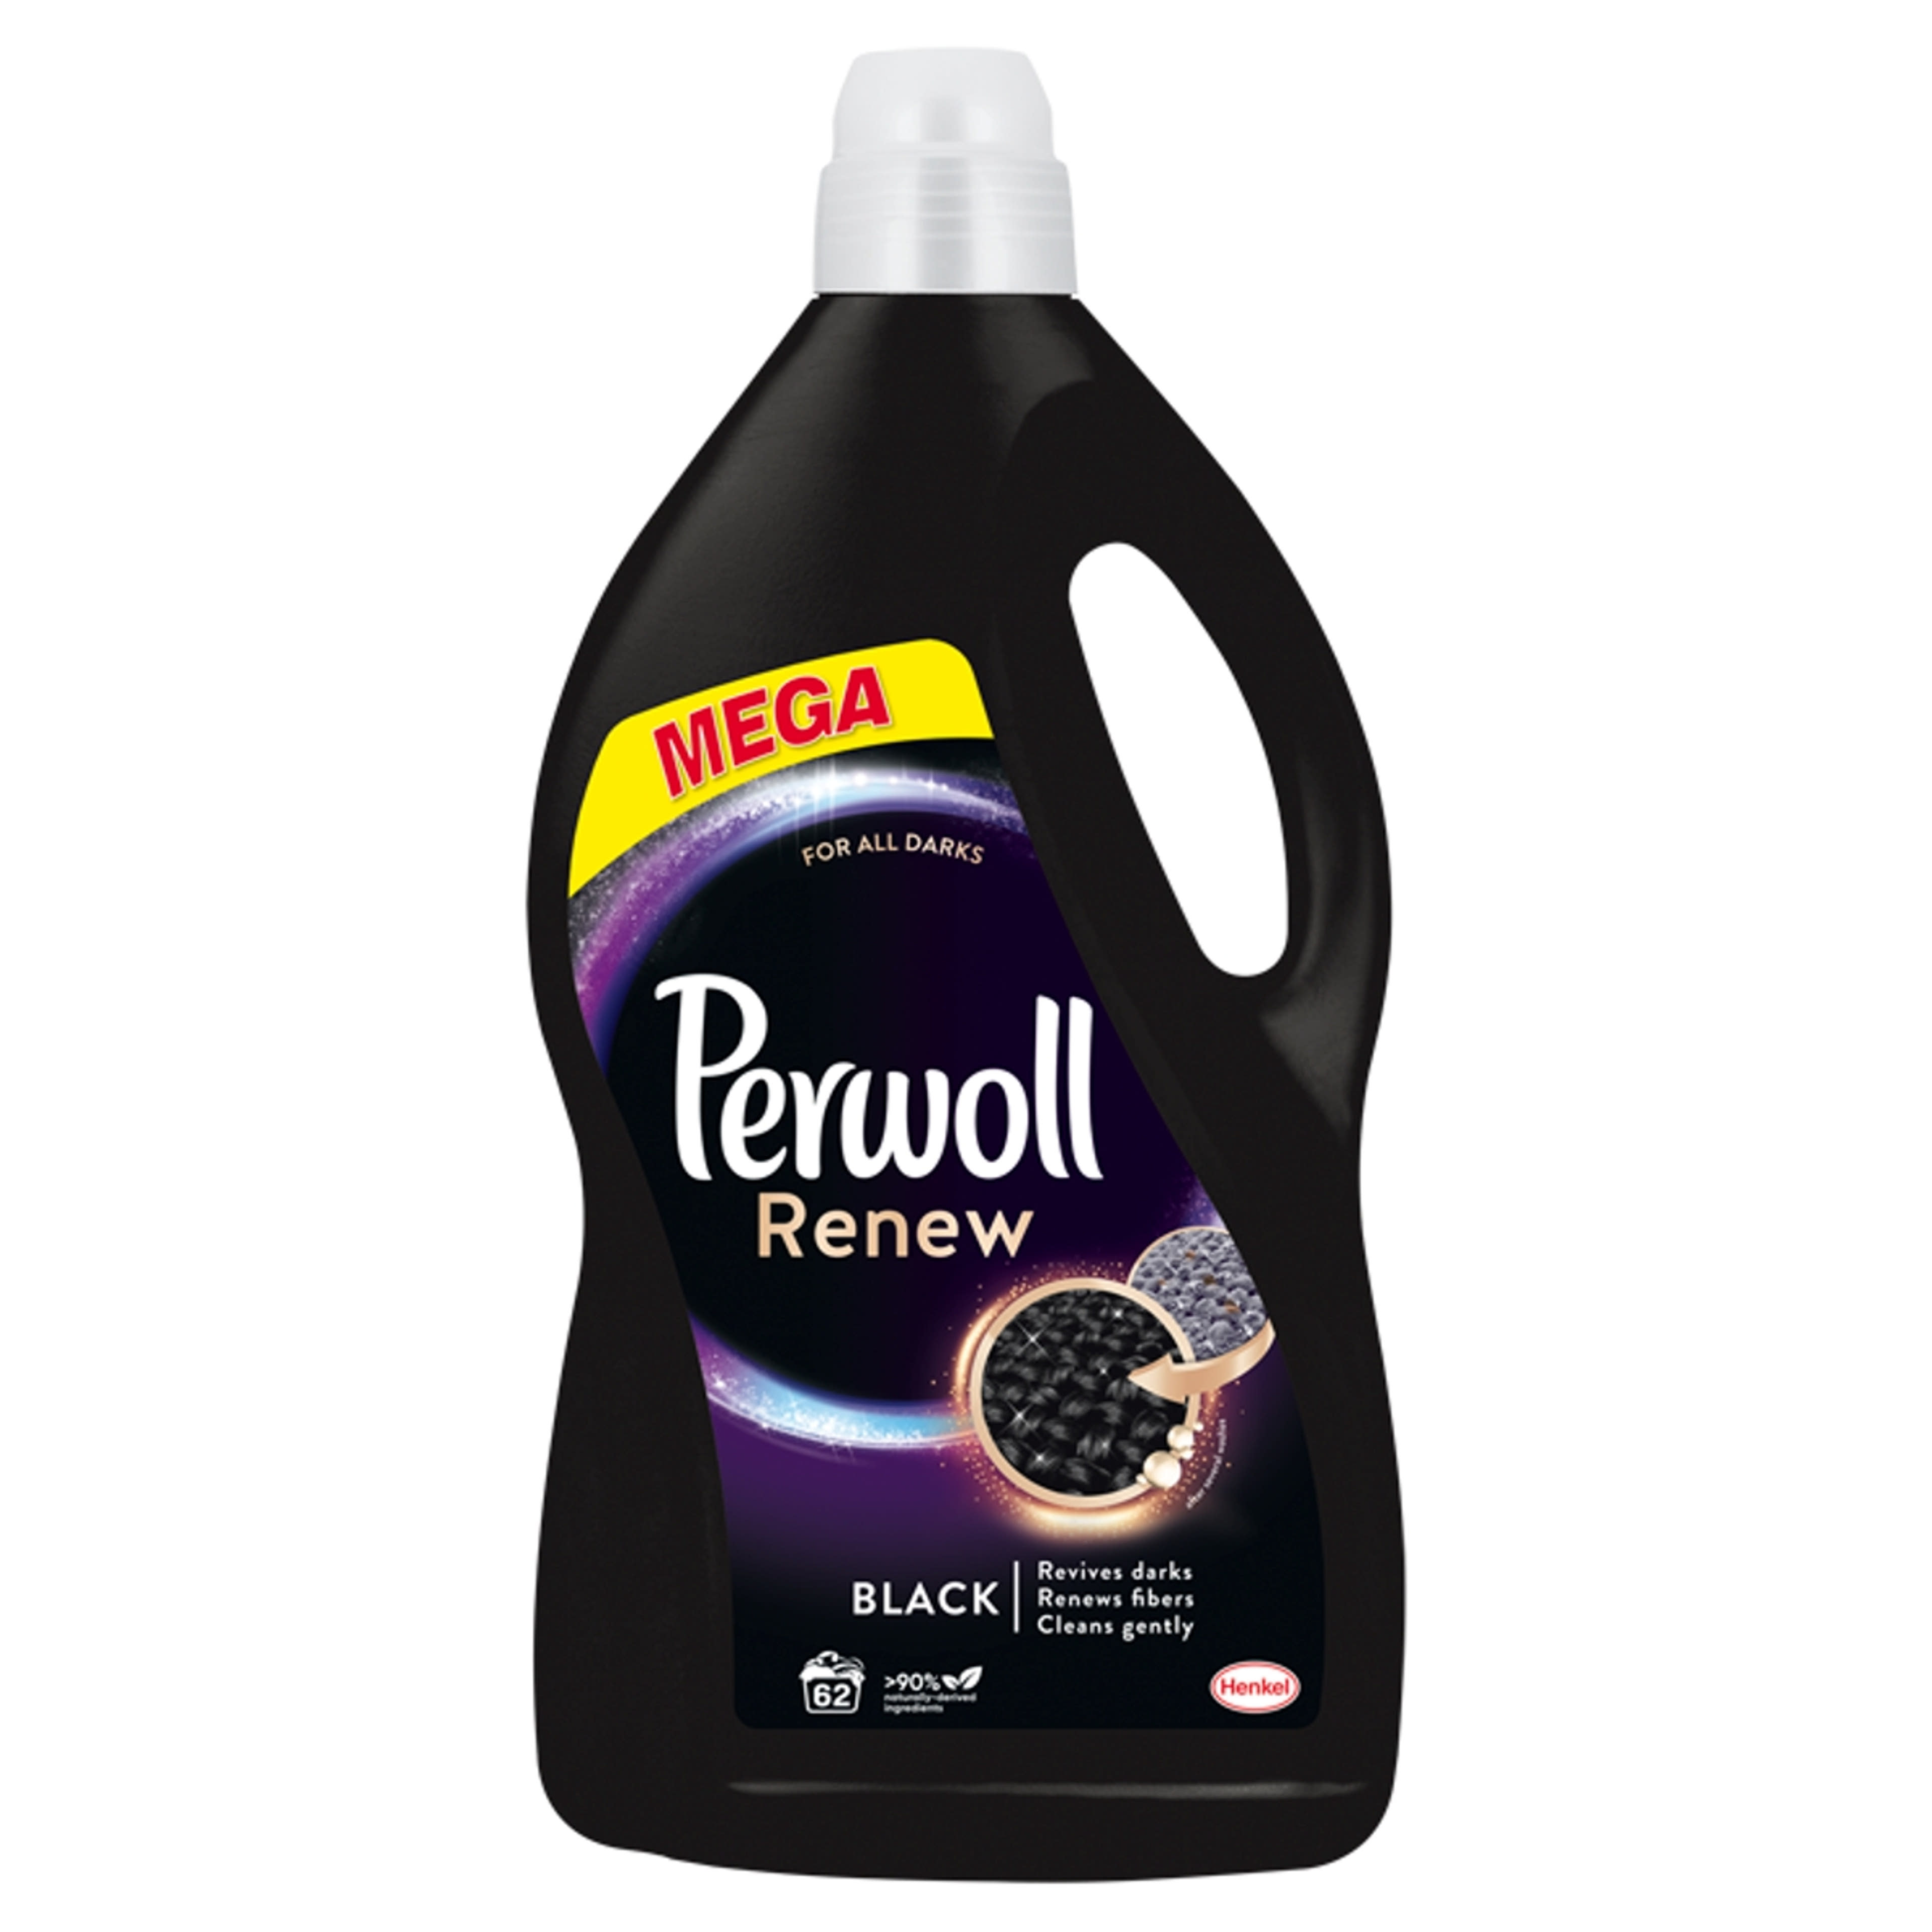 Perwoll Renew & Black folyékony mosószer, 62 mosás - 3720 ml-1